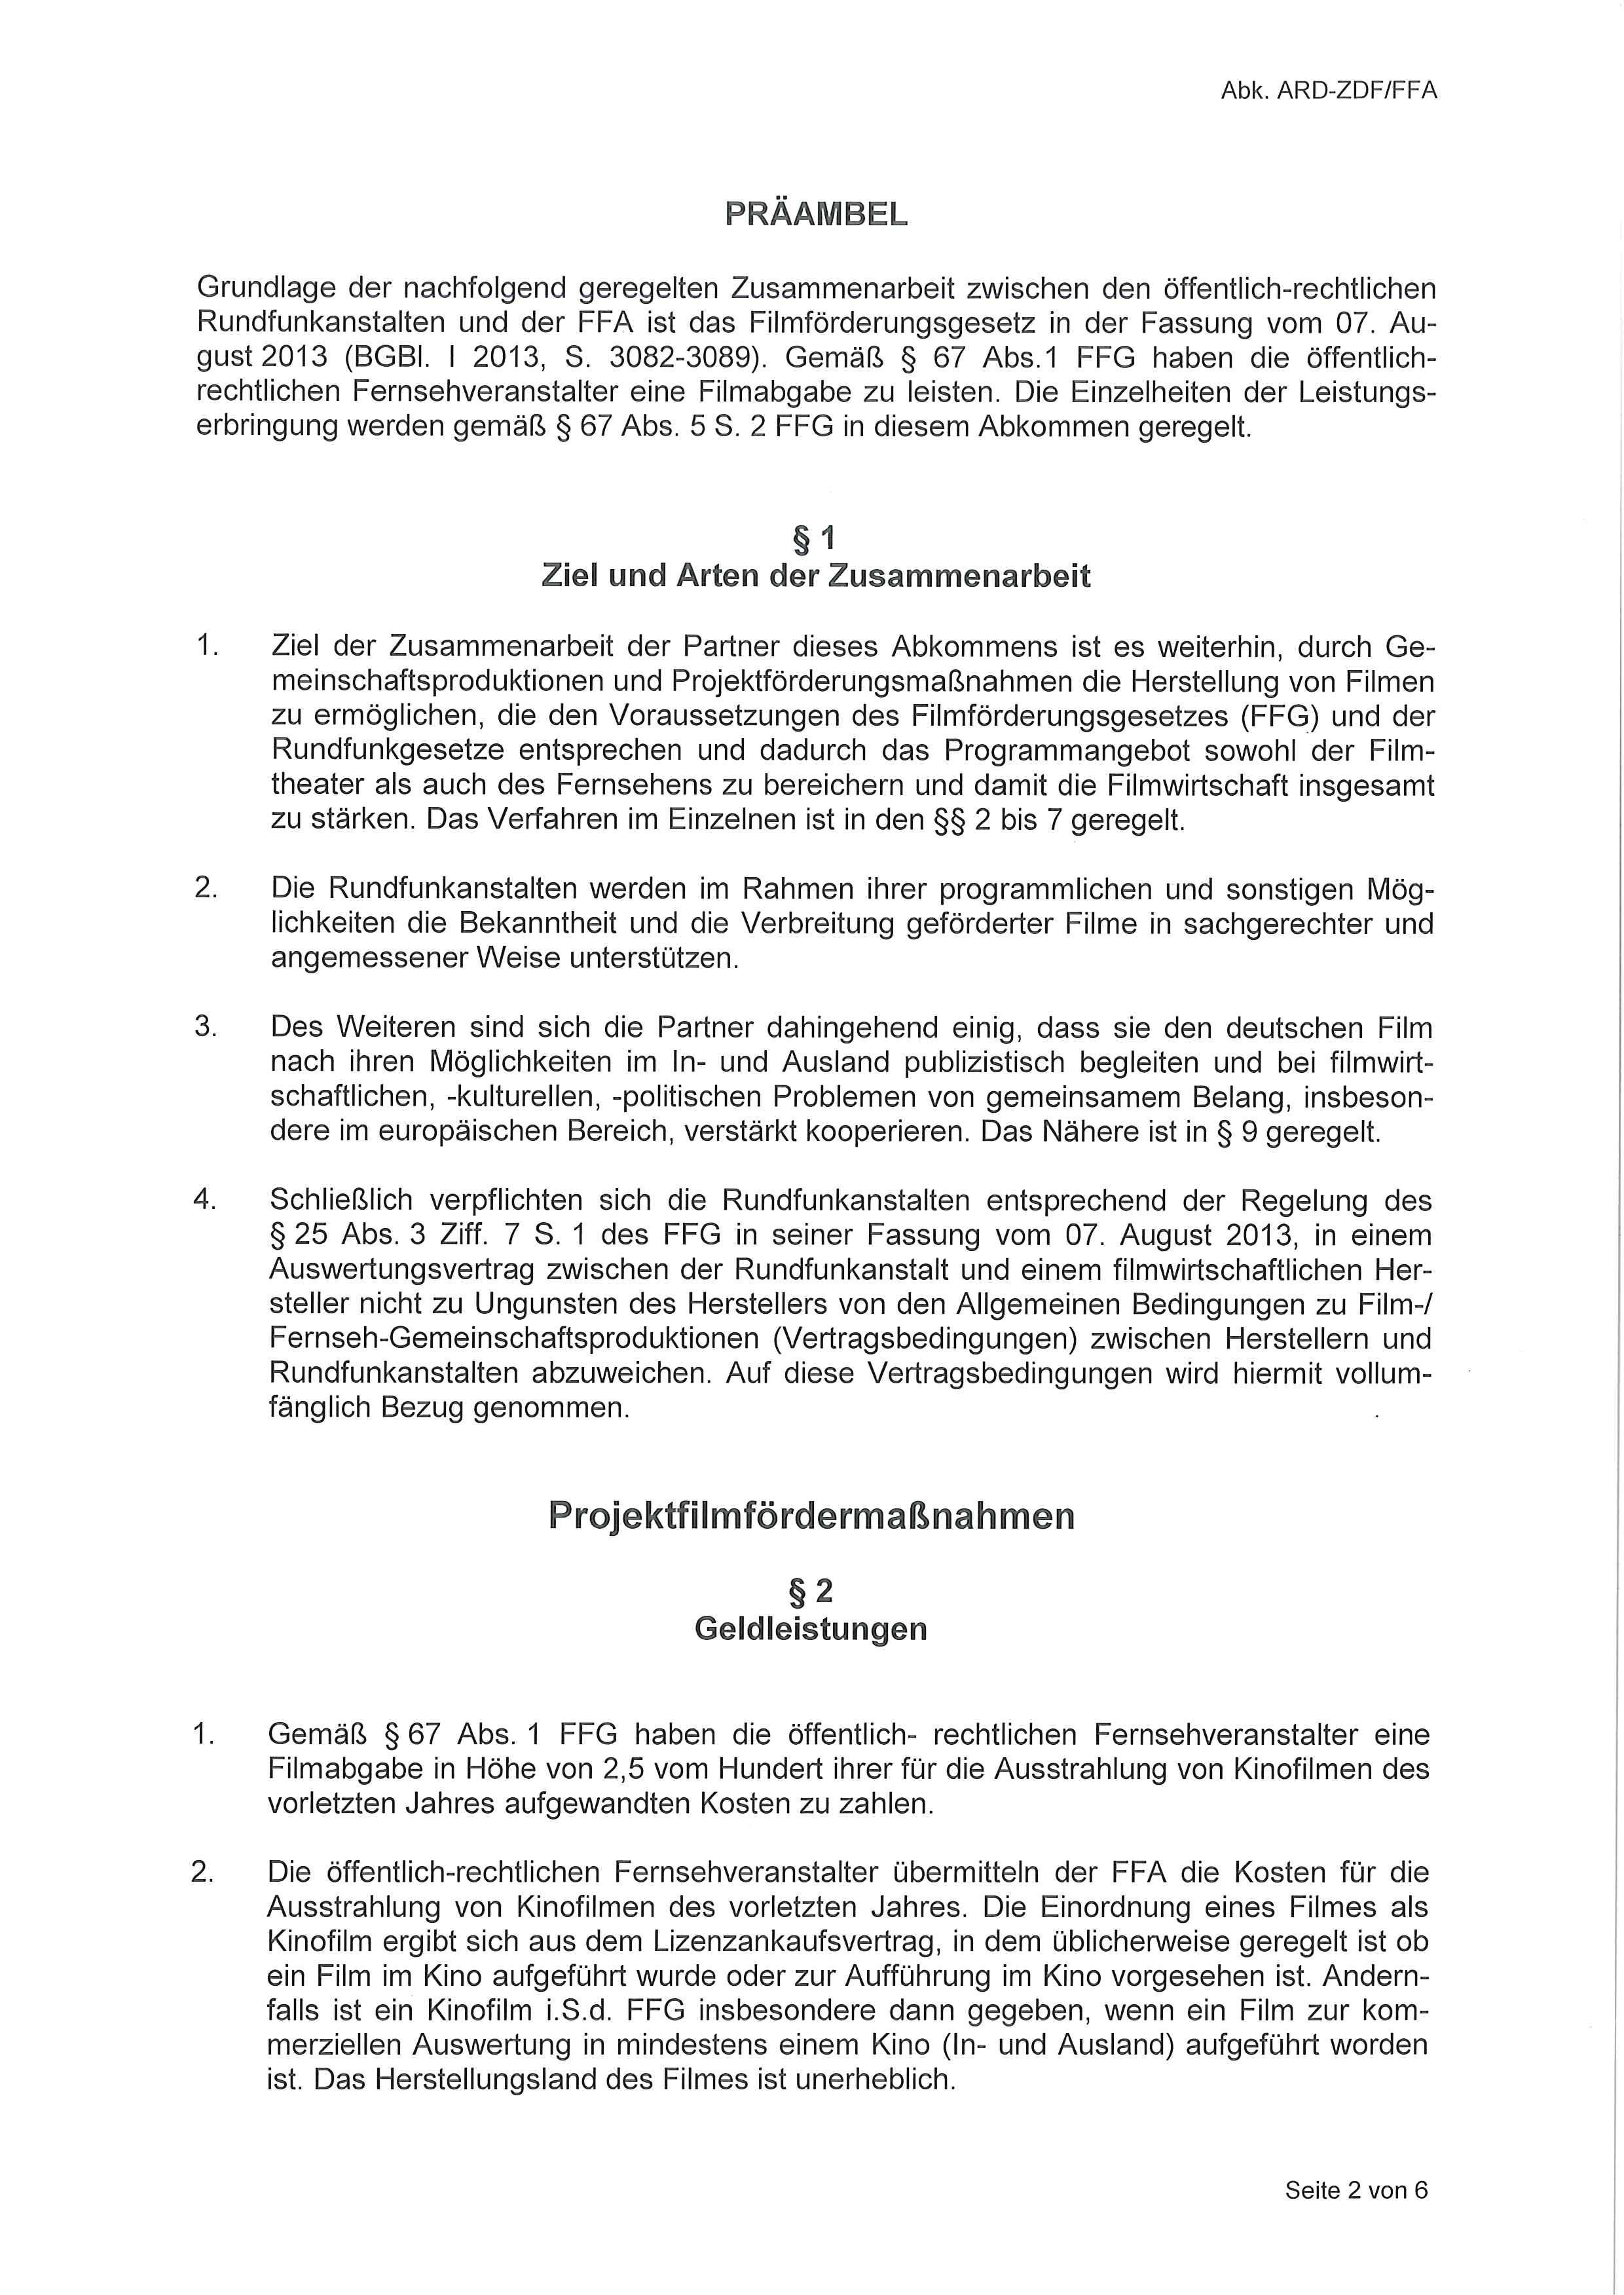 PRÄAIVIBEL Grundlage der nachfolgend geregelten Zusammenarbeit zwischen den öffentlich-rechtlichen Rundfunkanstalten und der FFA ist das Filmförderungsgesetz in der Fassung vom 07. Au gust 2013 (BGBl.